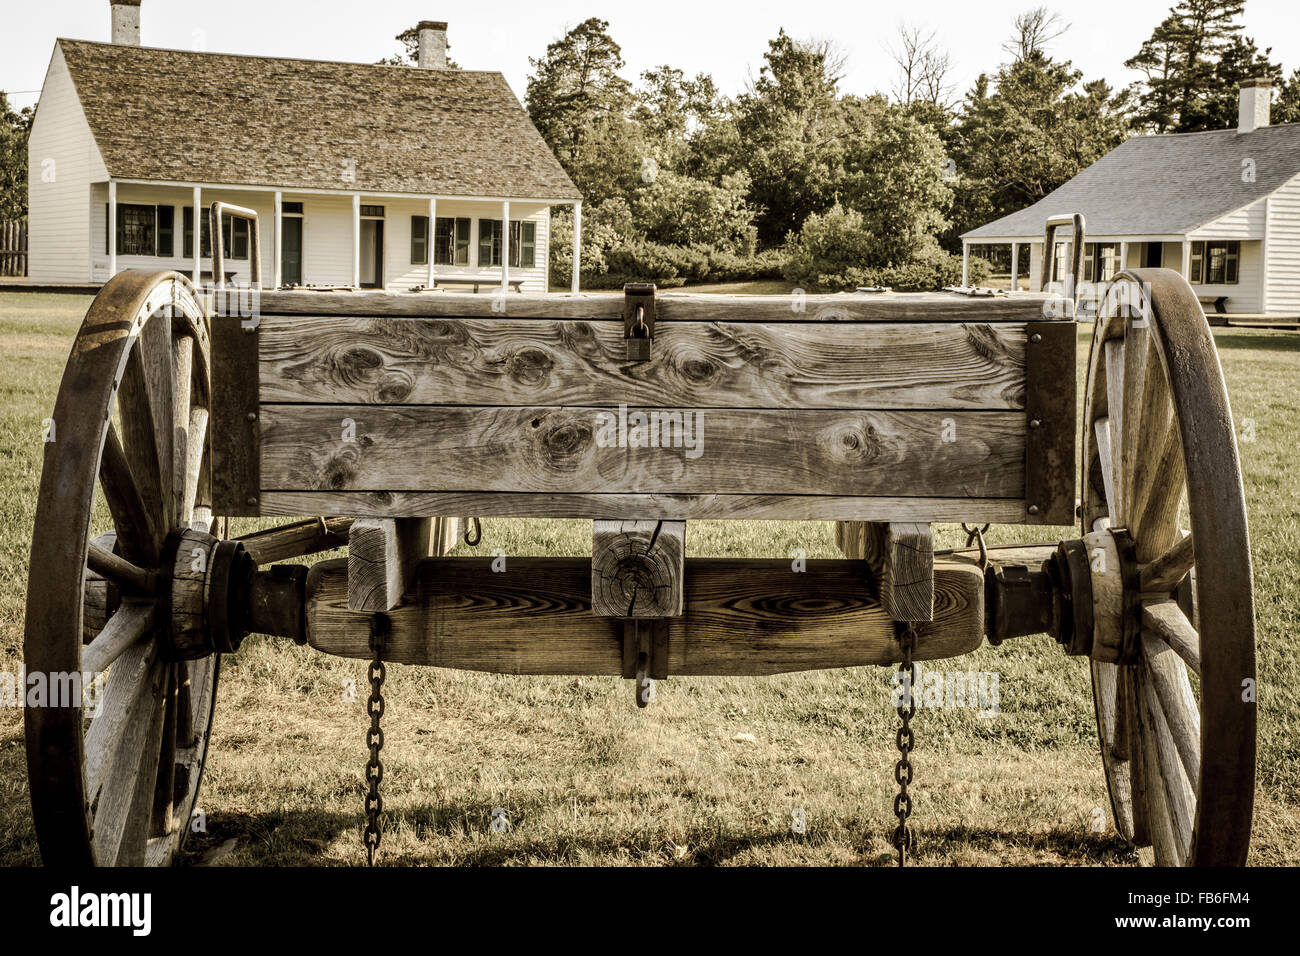 Vagón de madera Vintage en exhibición en Fort Wilkins State Historical Park. El estado dispone de un parque de 1800s US Army fort. Foto de stock